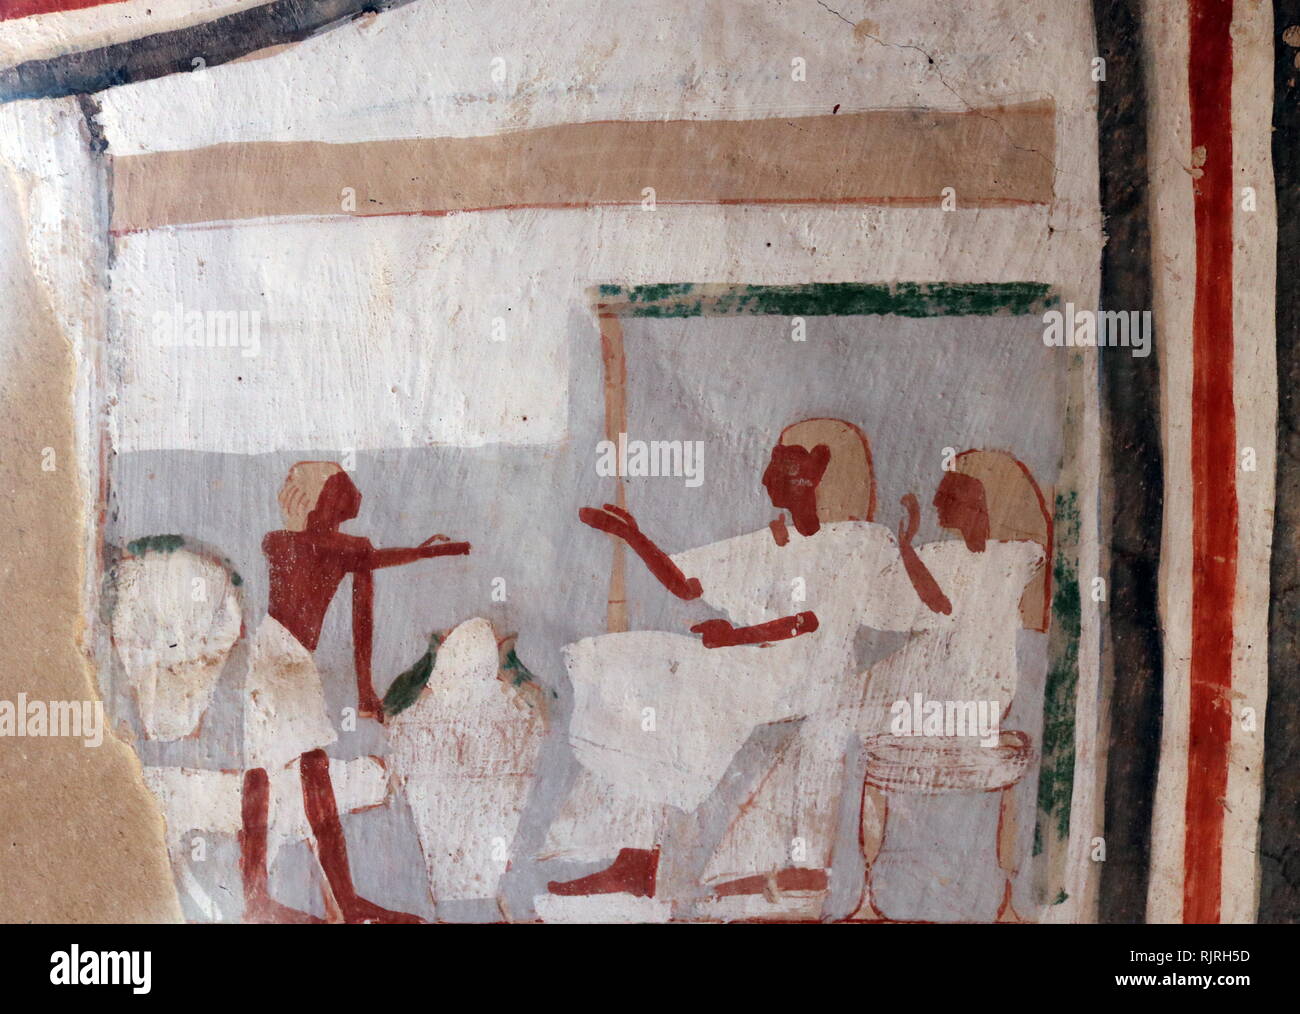 Peinture murale à l'intérieur de la tombe thébaine de Roy (TT255), à Dra Abou el-Naga. Il fait partie de la nécropole thébaine, située sur la rive ouest du Nil face à Louxor. Le sépulcre est la sépulture de, Roy, qui a vécu à la fin de la xviiie dynastie, sous le règne d'Horemheb. Roy était un scribe royal dans la succession d'Horemheb et d'Amon. Sa femme, qui s'affiche avec lui dans le tombeau de peintures, est nommé comme Nebtawy ou 'Tawy" Banque D'Images